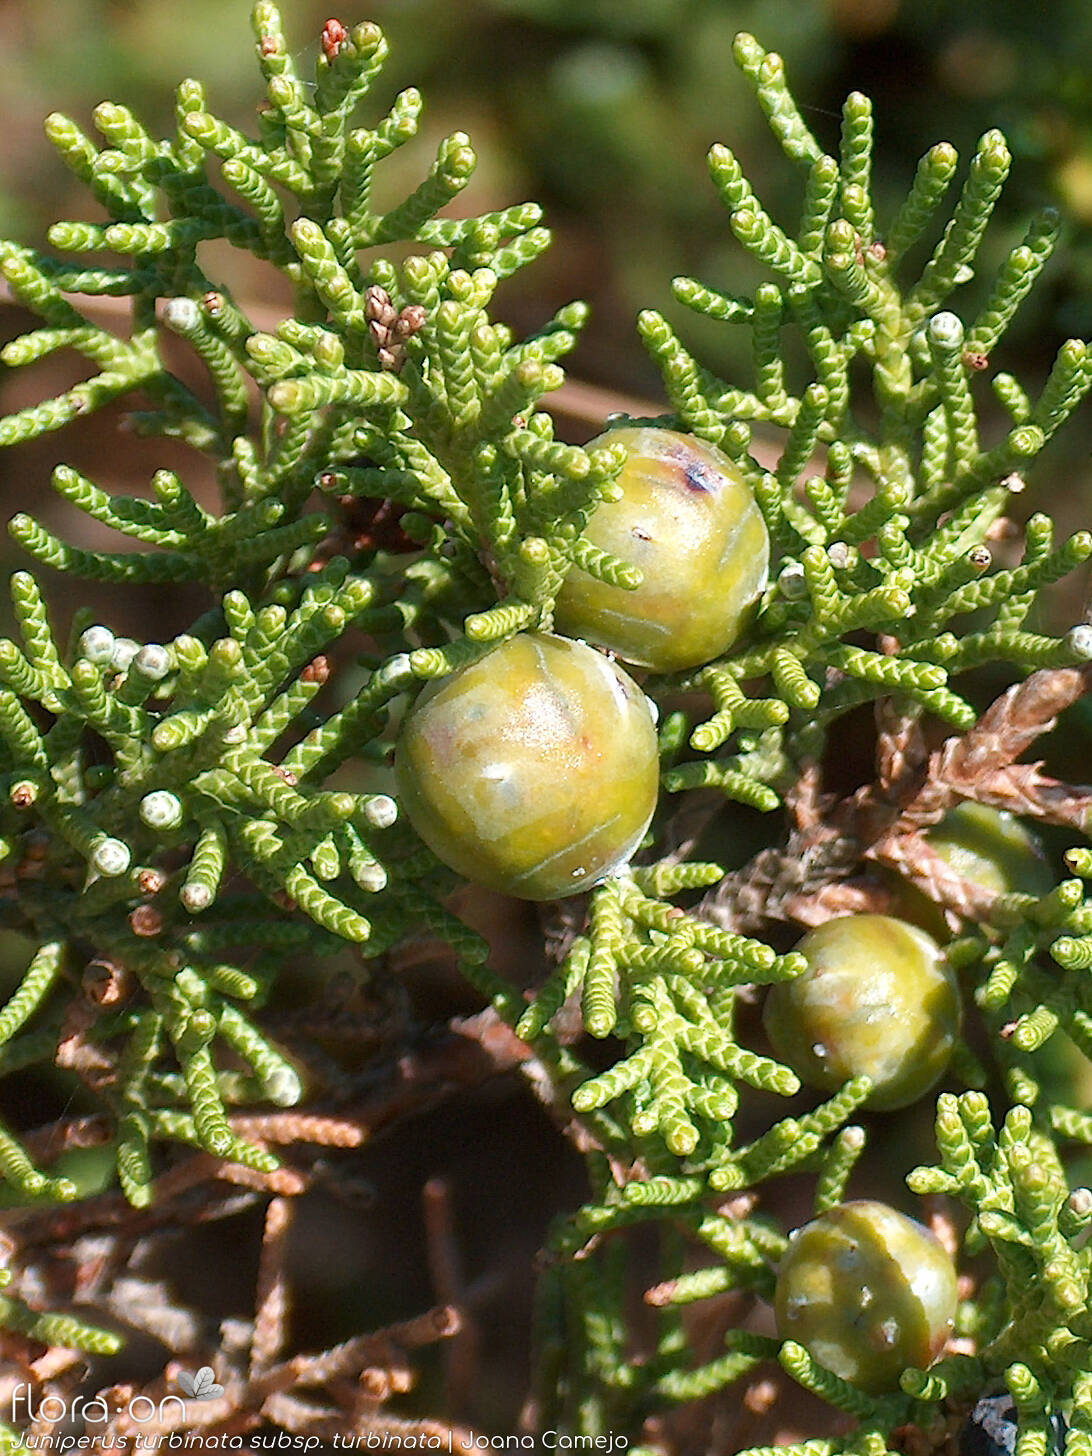 Juniperus turbinata turbinata - Fruto | Joana Camejo; CC BY-NC 4.0